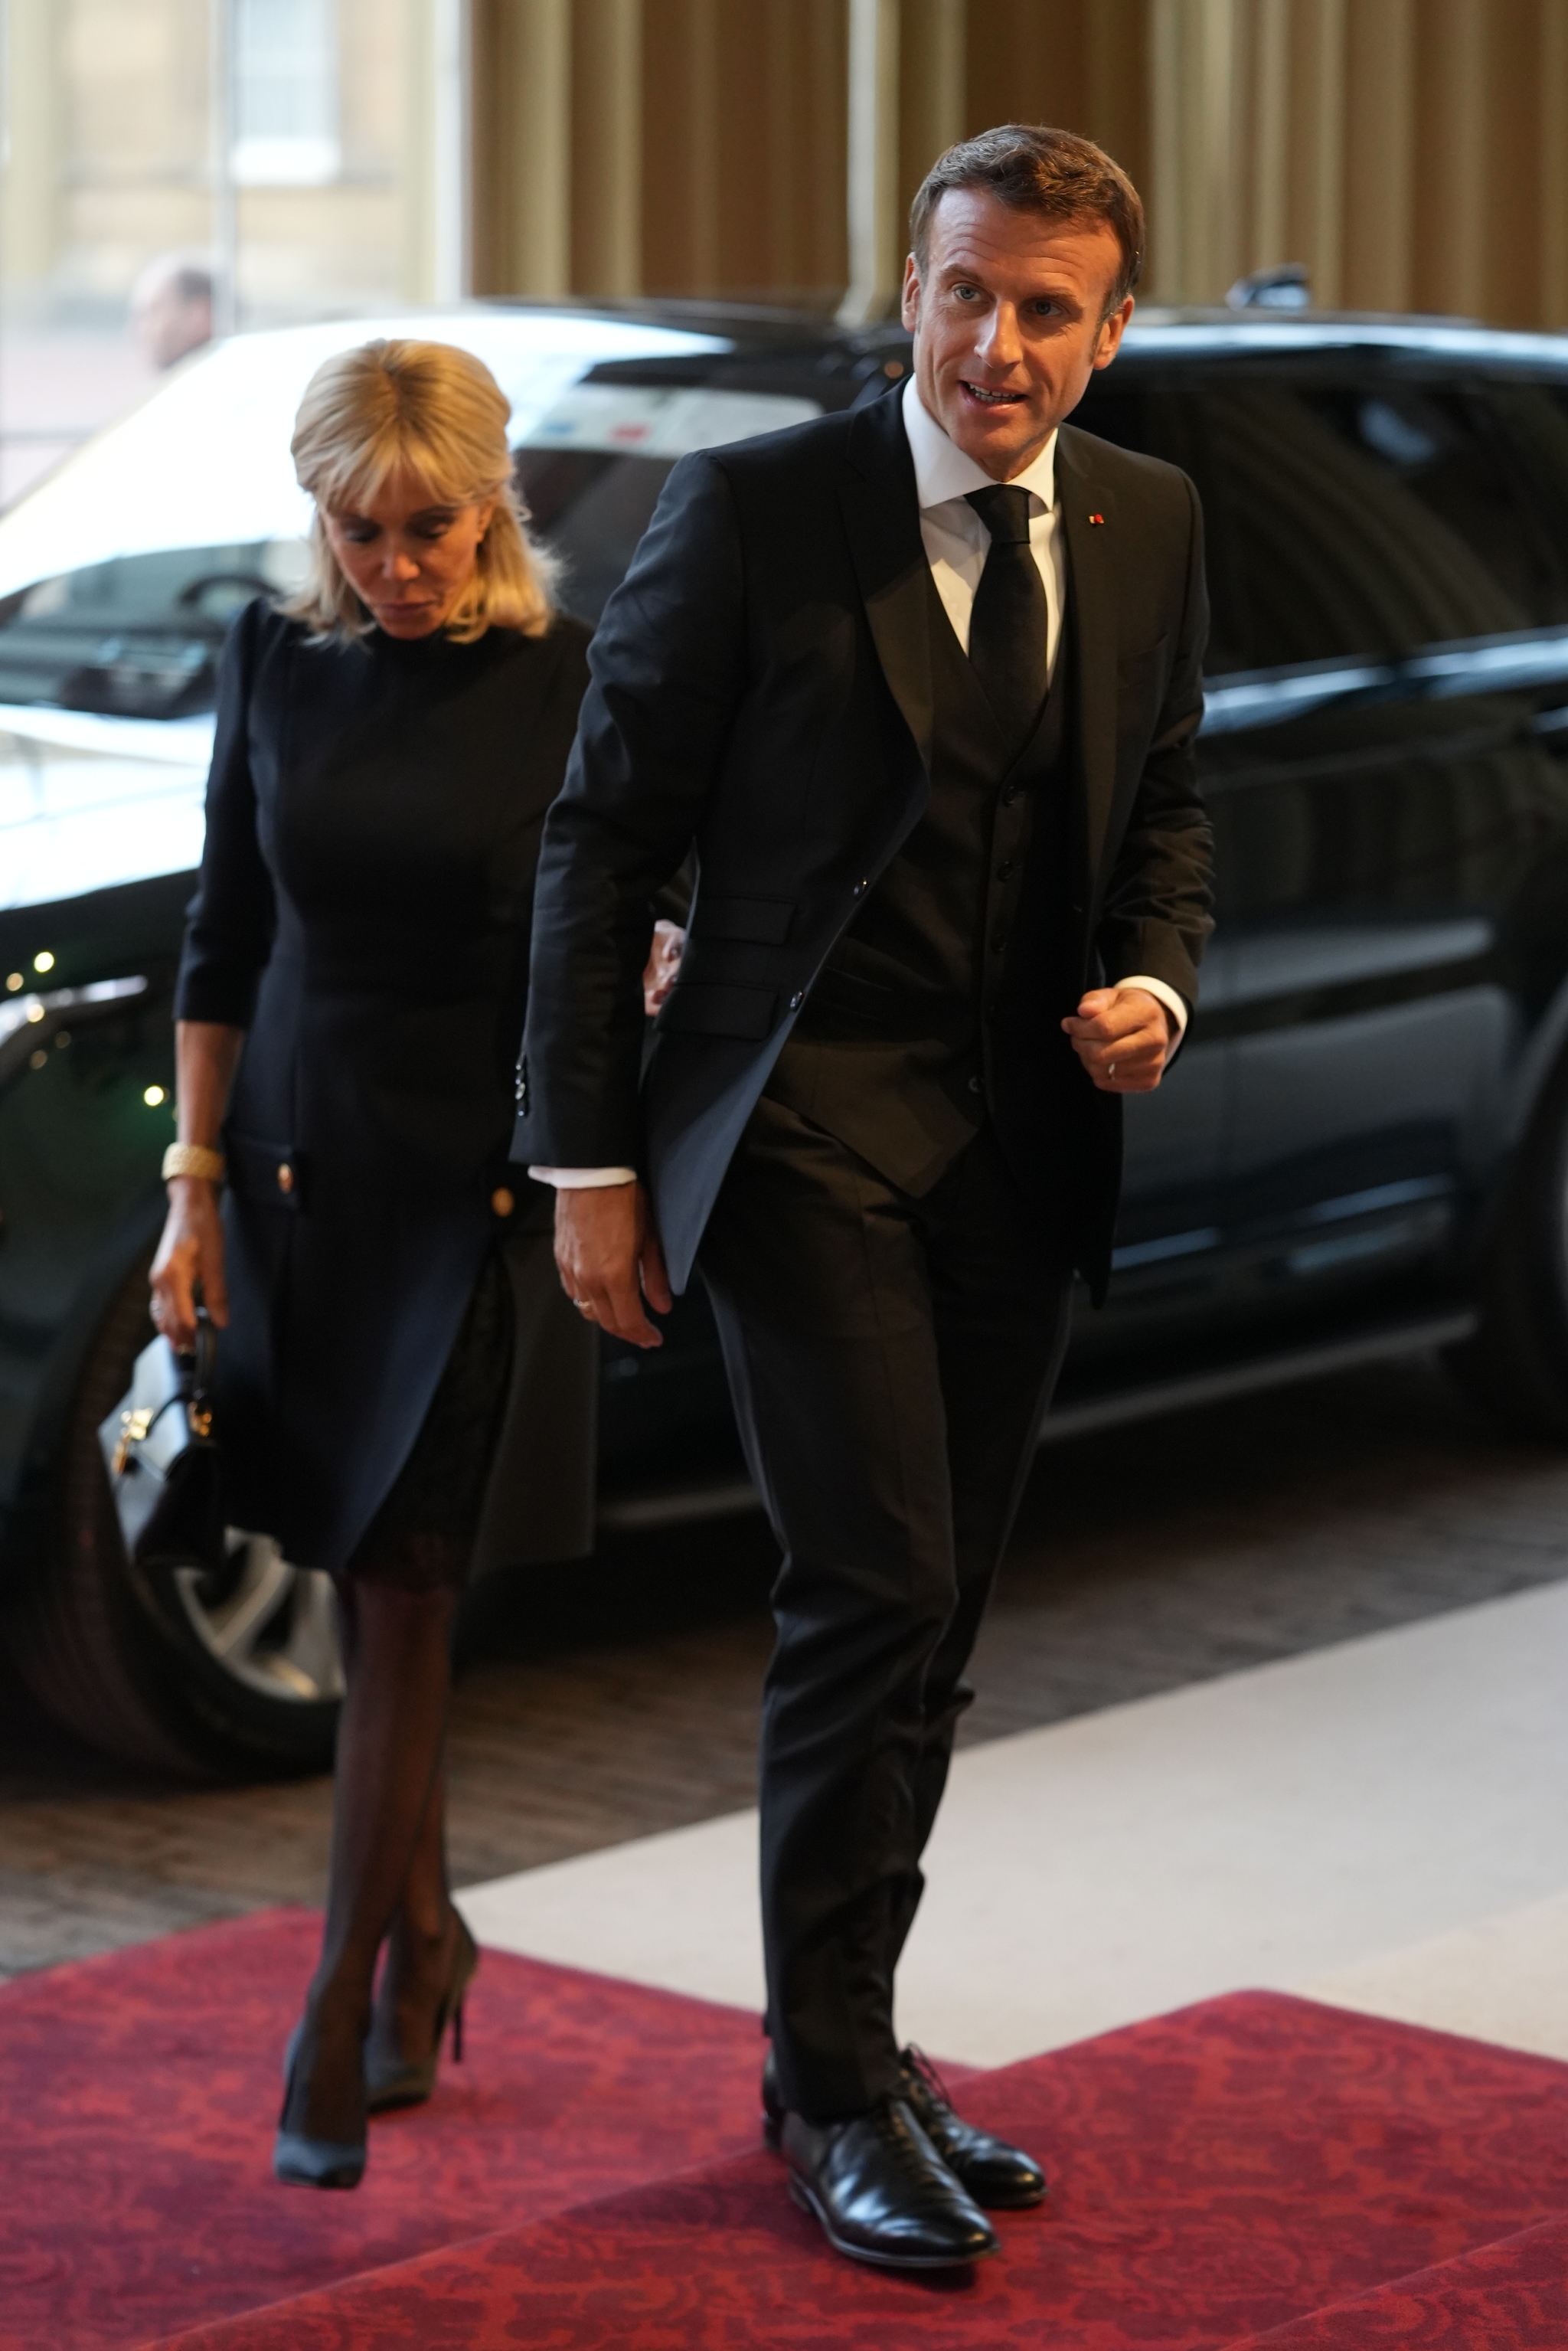 El matrimonio Macron.